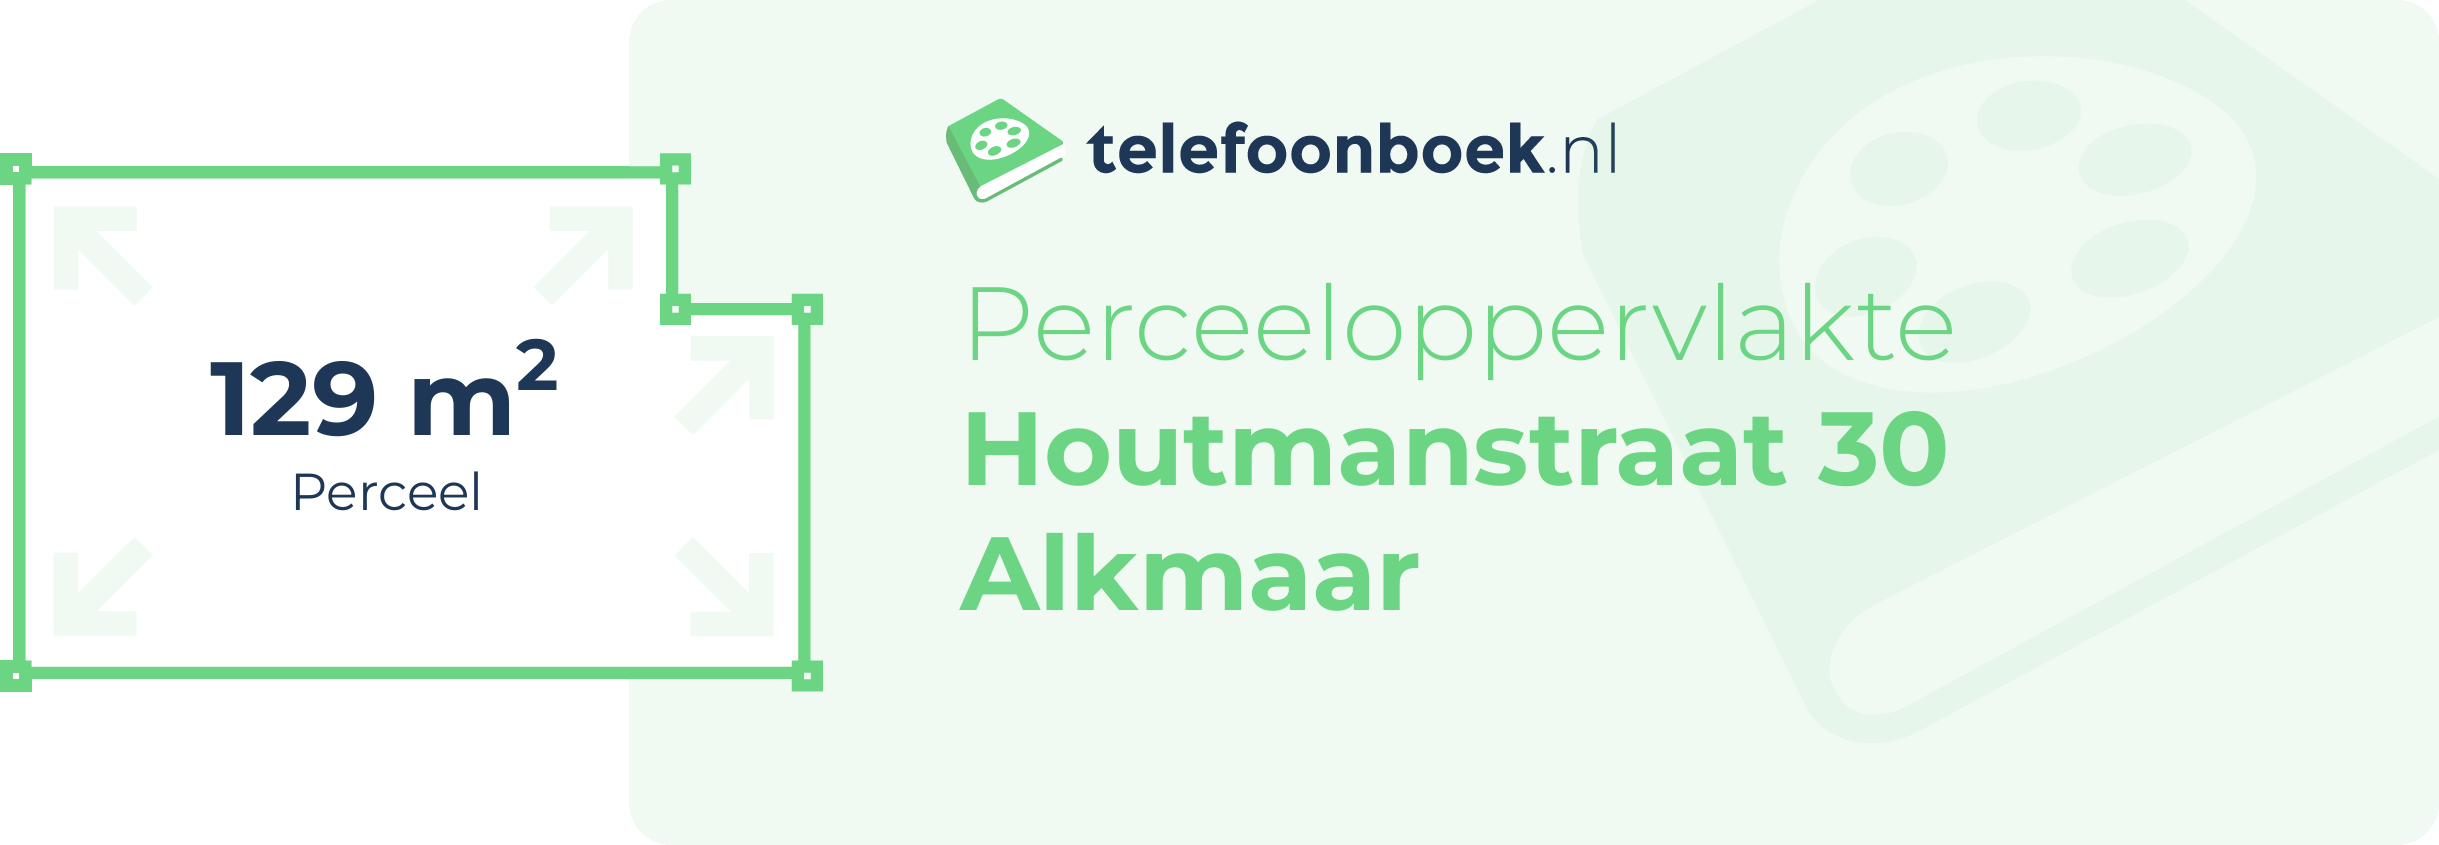 Perceeloppervlakte Houtmanstraat 30 Alkmaar